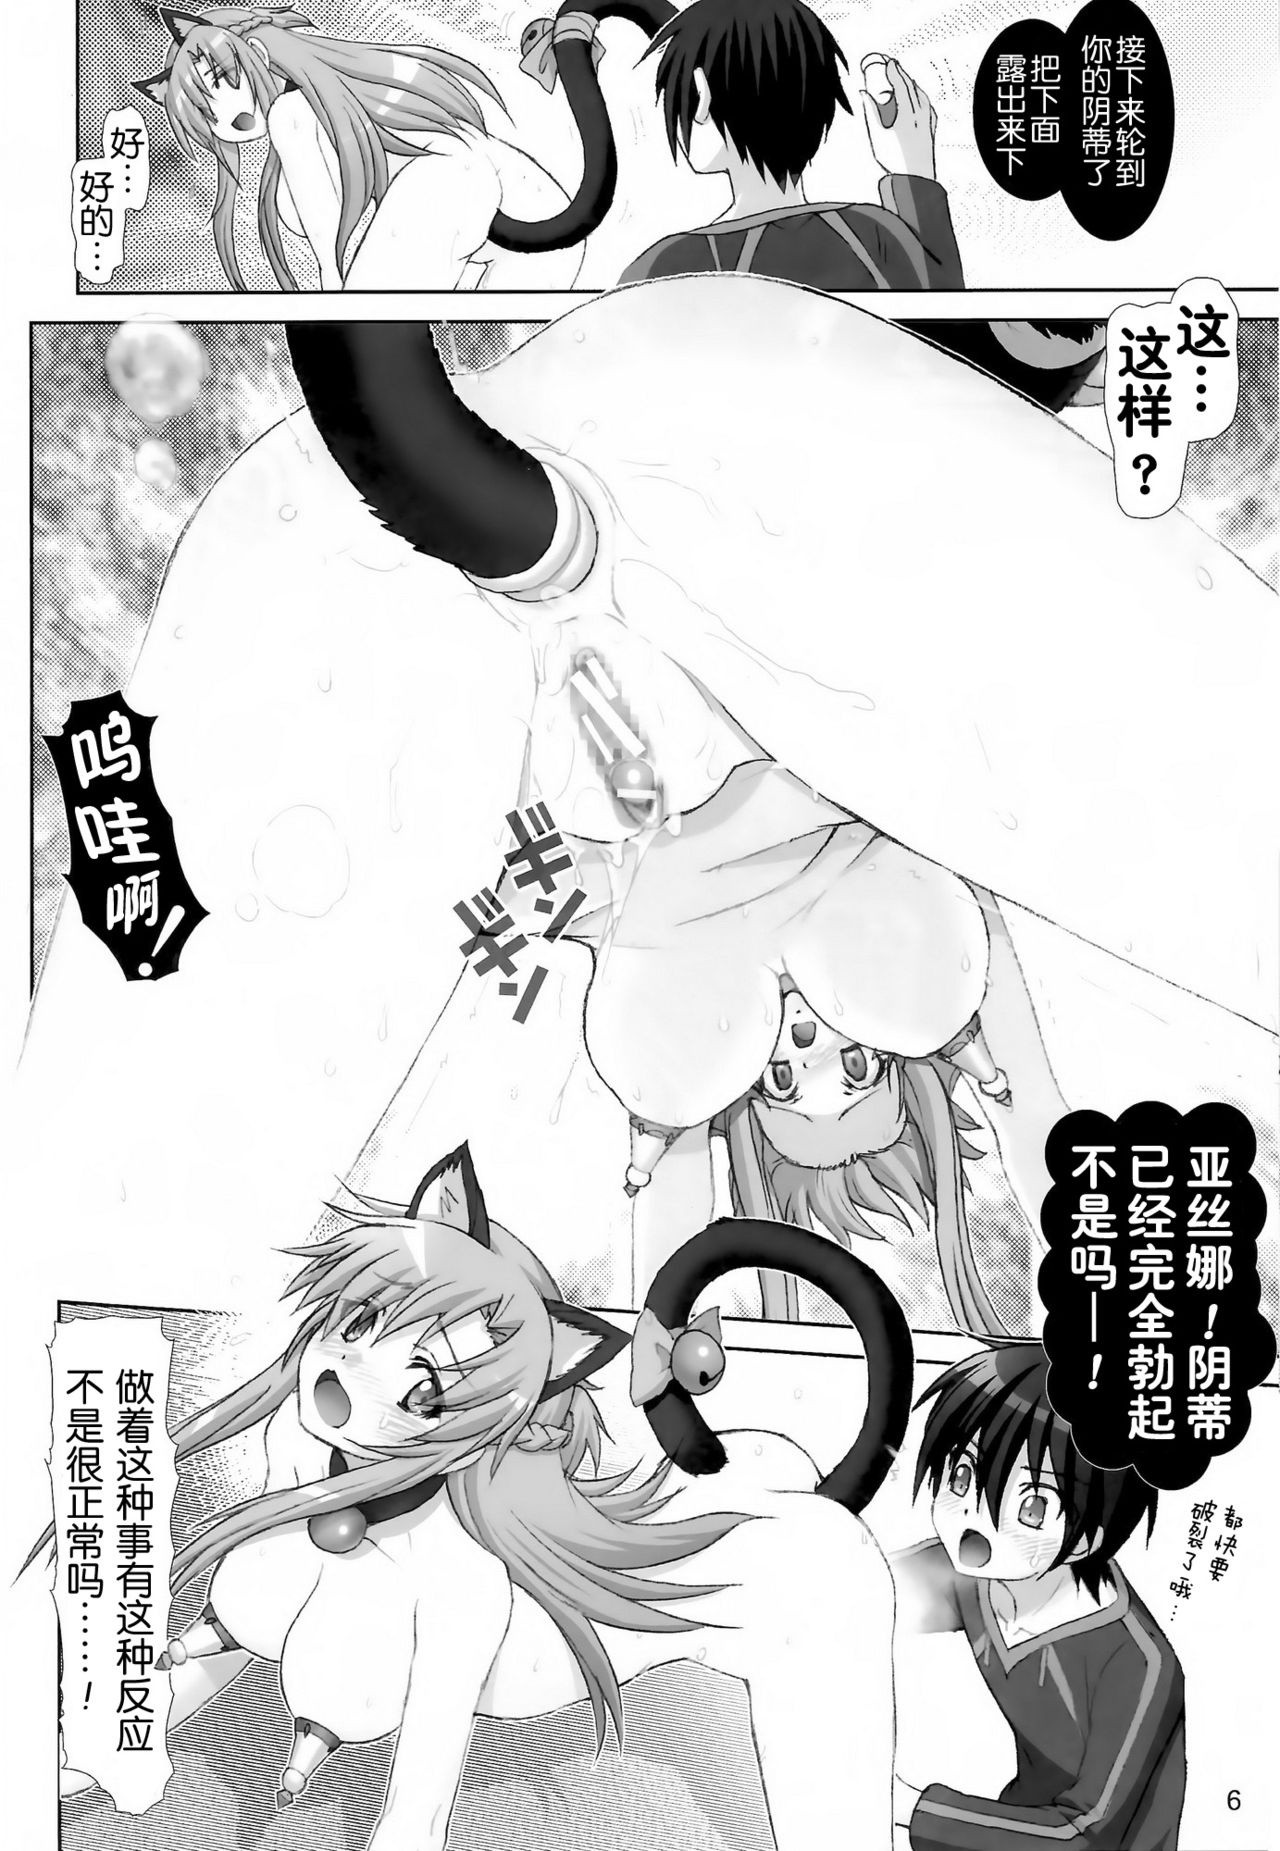 Sword Tsuma Asuna 2 hentai manga picture 5